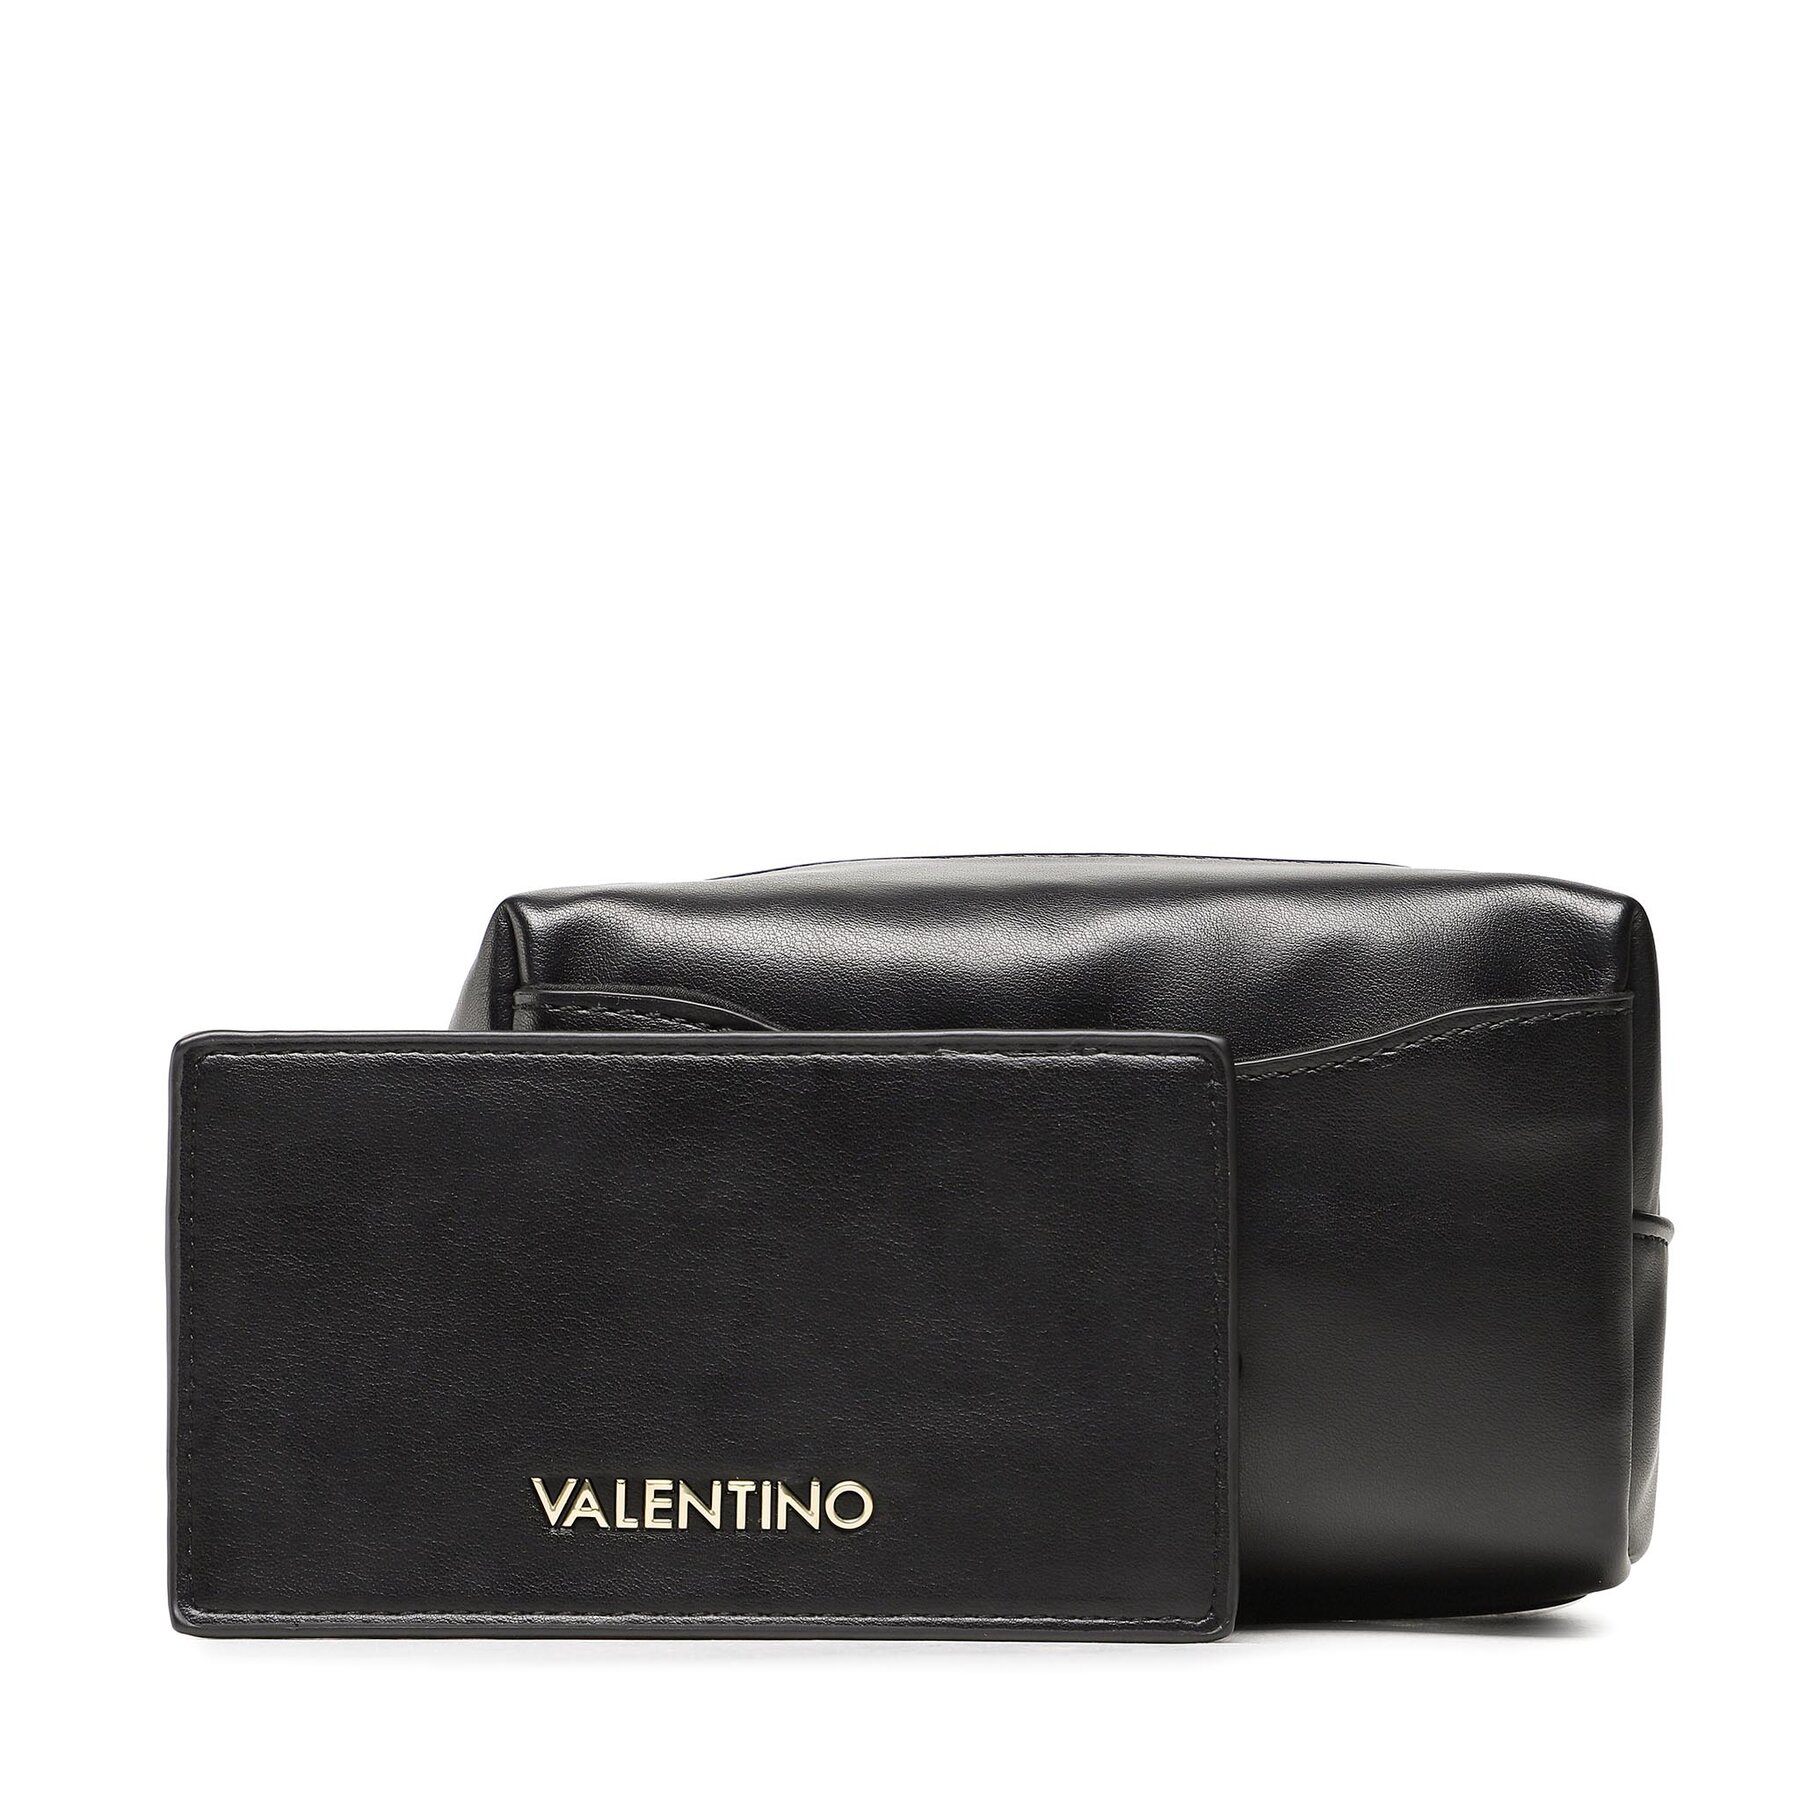 Geantă pentru cosmetice Valentino Lemonade VBE6RH541 Nero cosmetice